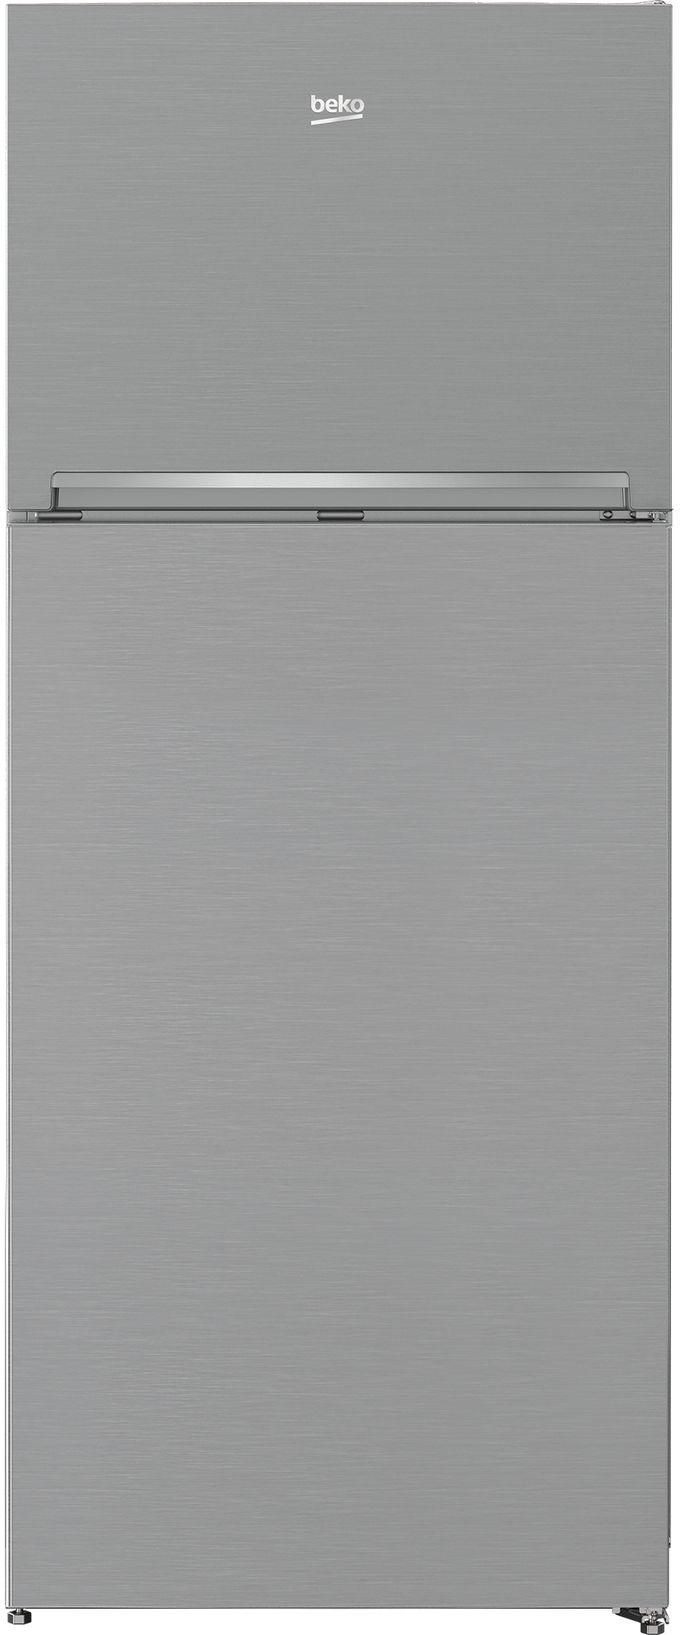 Beko RDNE430K02DXI No Frost Refrigerator, 367 Liter, 2 Doors